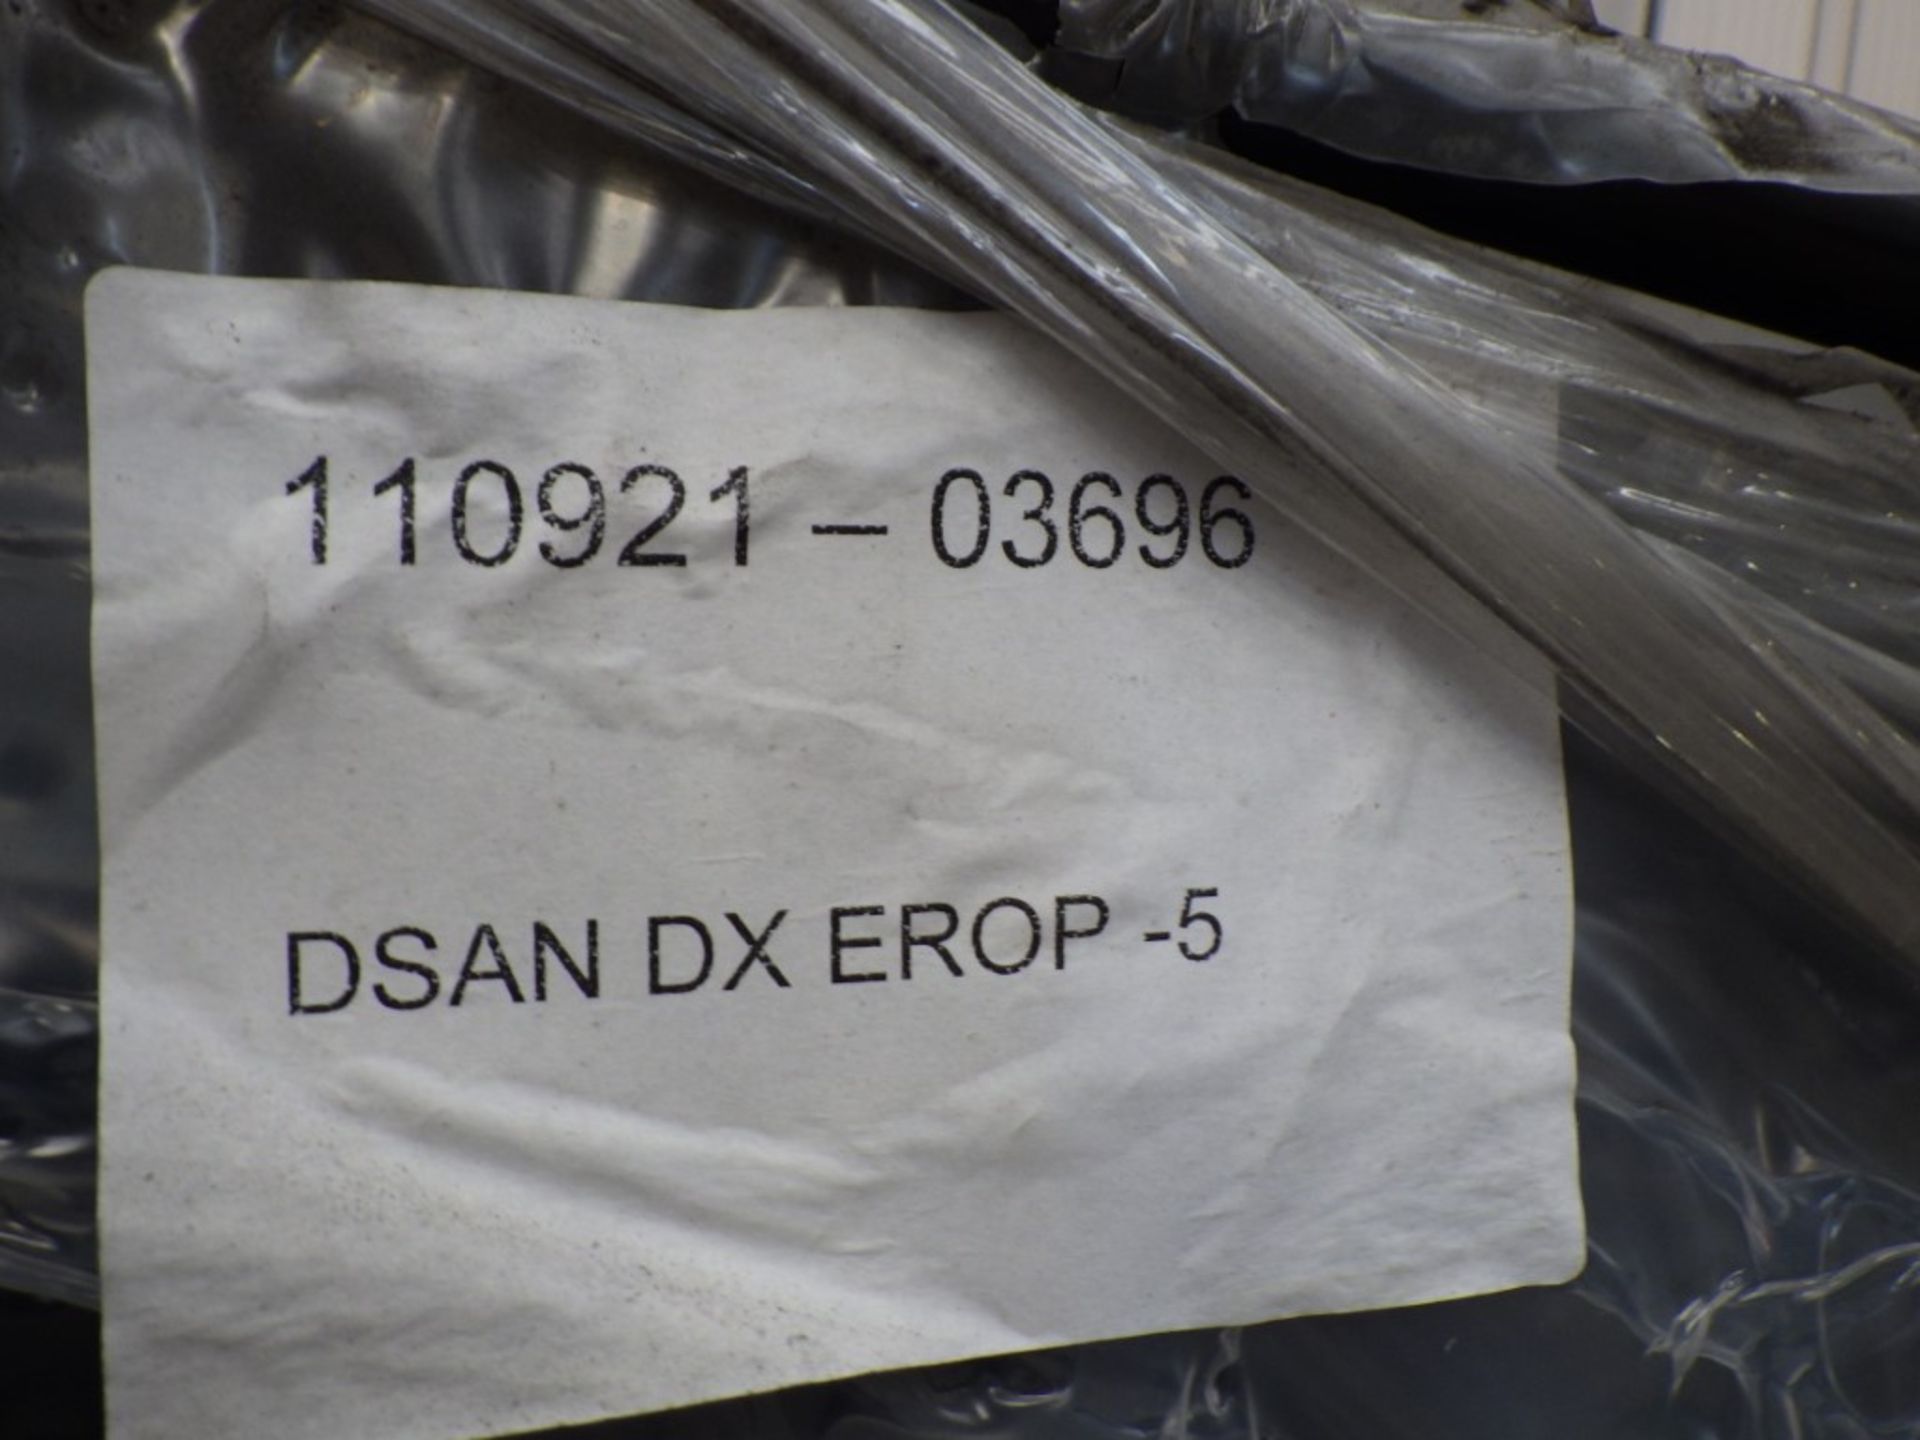 CABCARE VANDAL GUARD TO SUIT DOOSAN DX LC-5 SERIES - Image 4 of 6